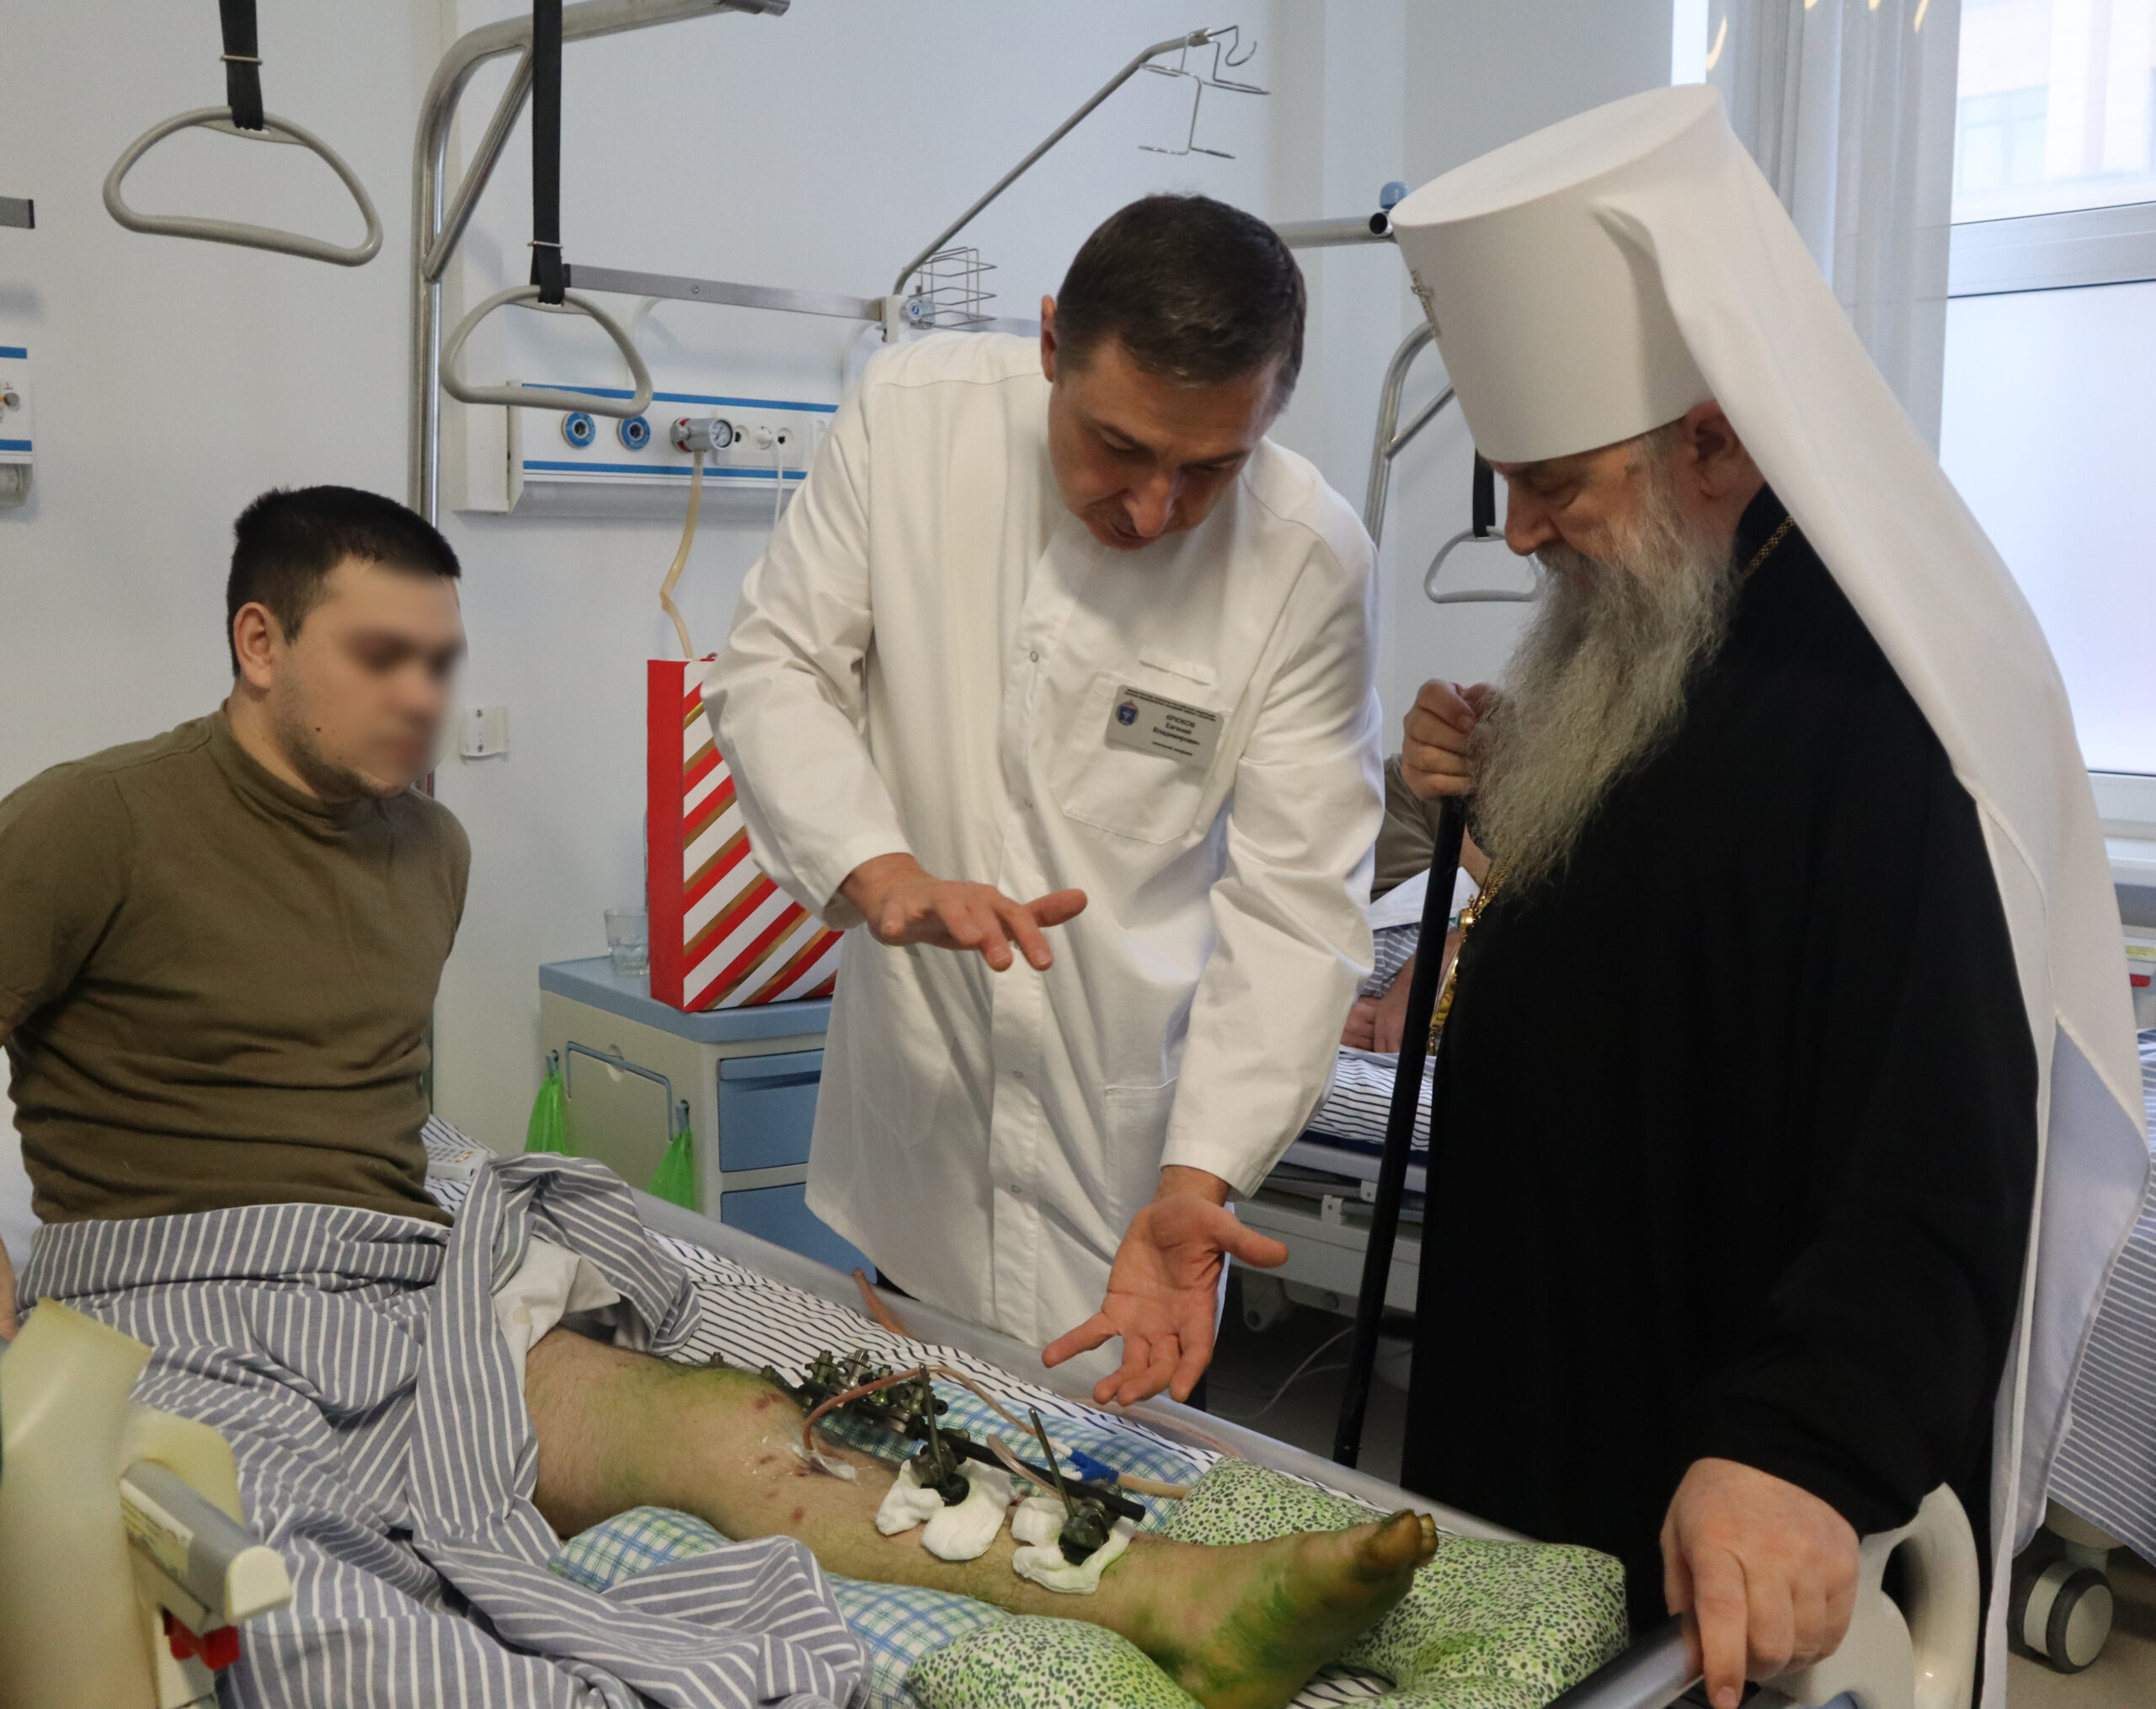 Митрополит Санкт-Петербуржский и Ладожский Варсонофий посетил бойцов, проходящих лечение в Военно-медицинской академии